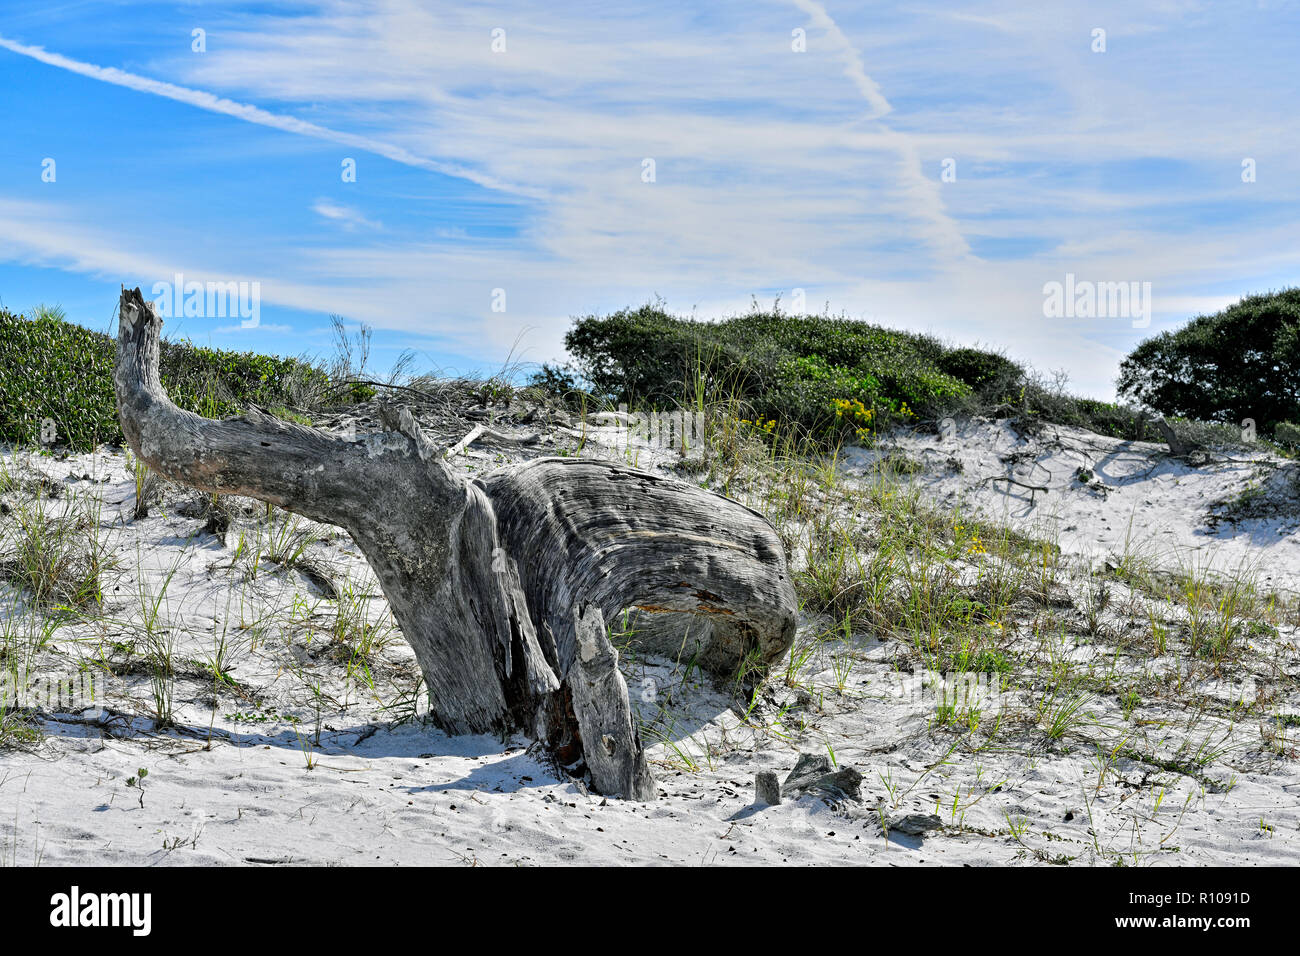 Souche d'arbre géant surmonté et le tronc d'un arbre de chêne de sable dans les dunes de sable le long de la côte du golfe de Floride panhandle, USA. Banque D'Images